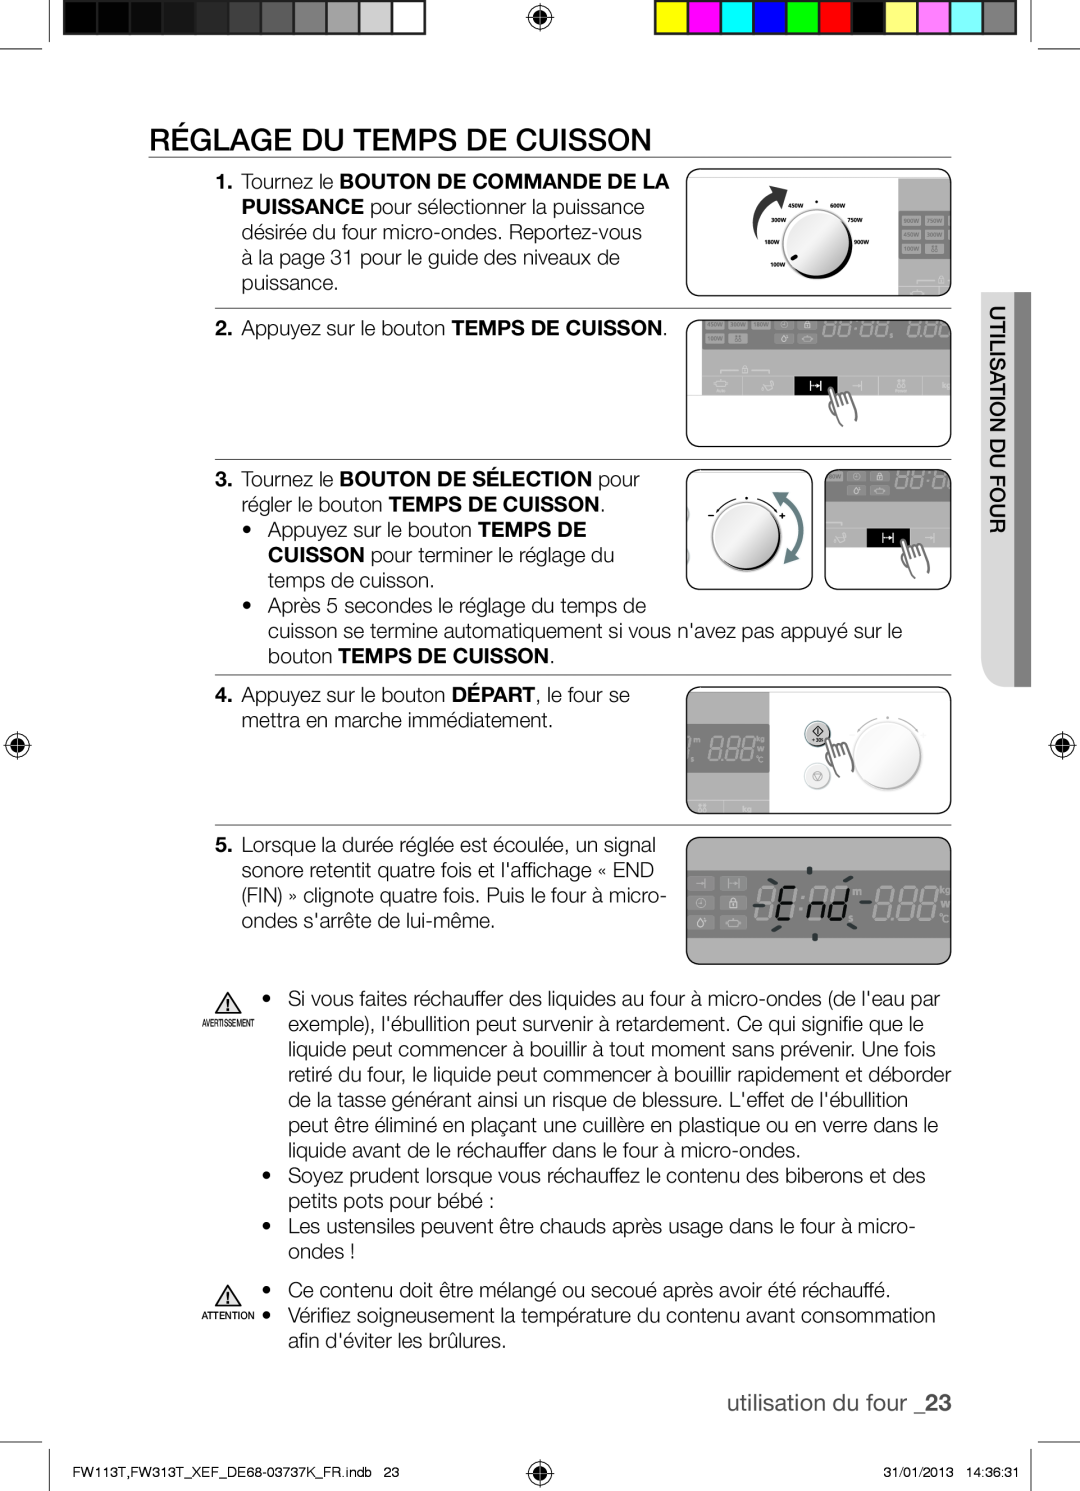 Samsung FW113T002/XEF manual Réglage Du Temps De Cuisson, utilisation du four 